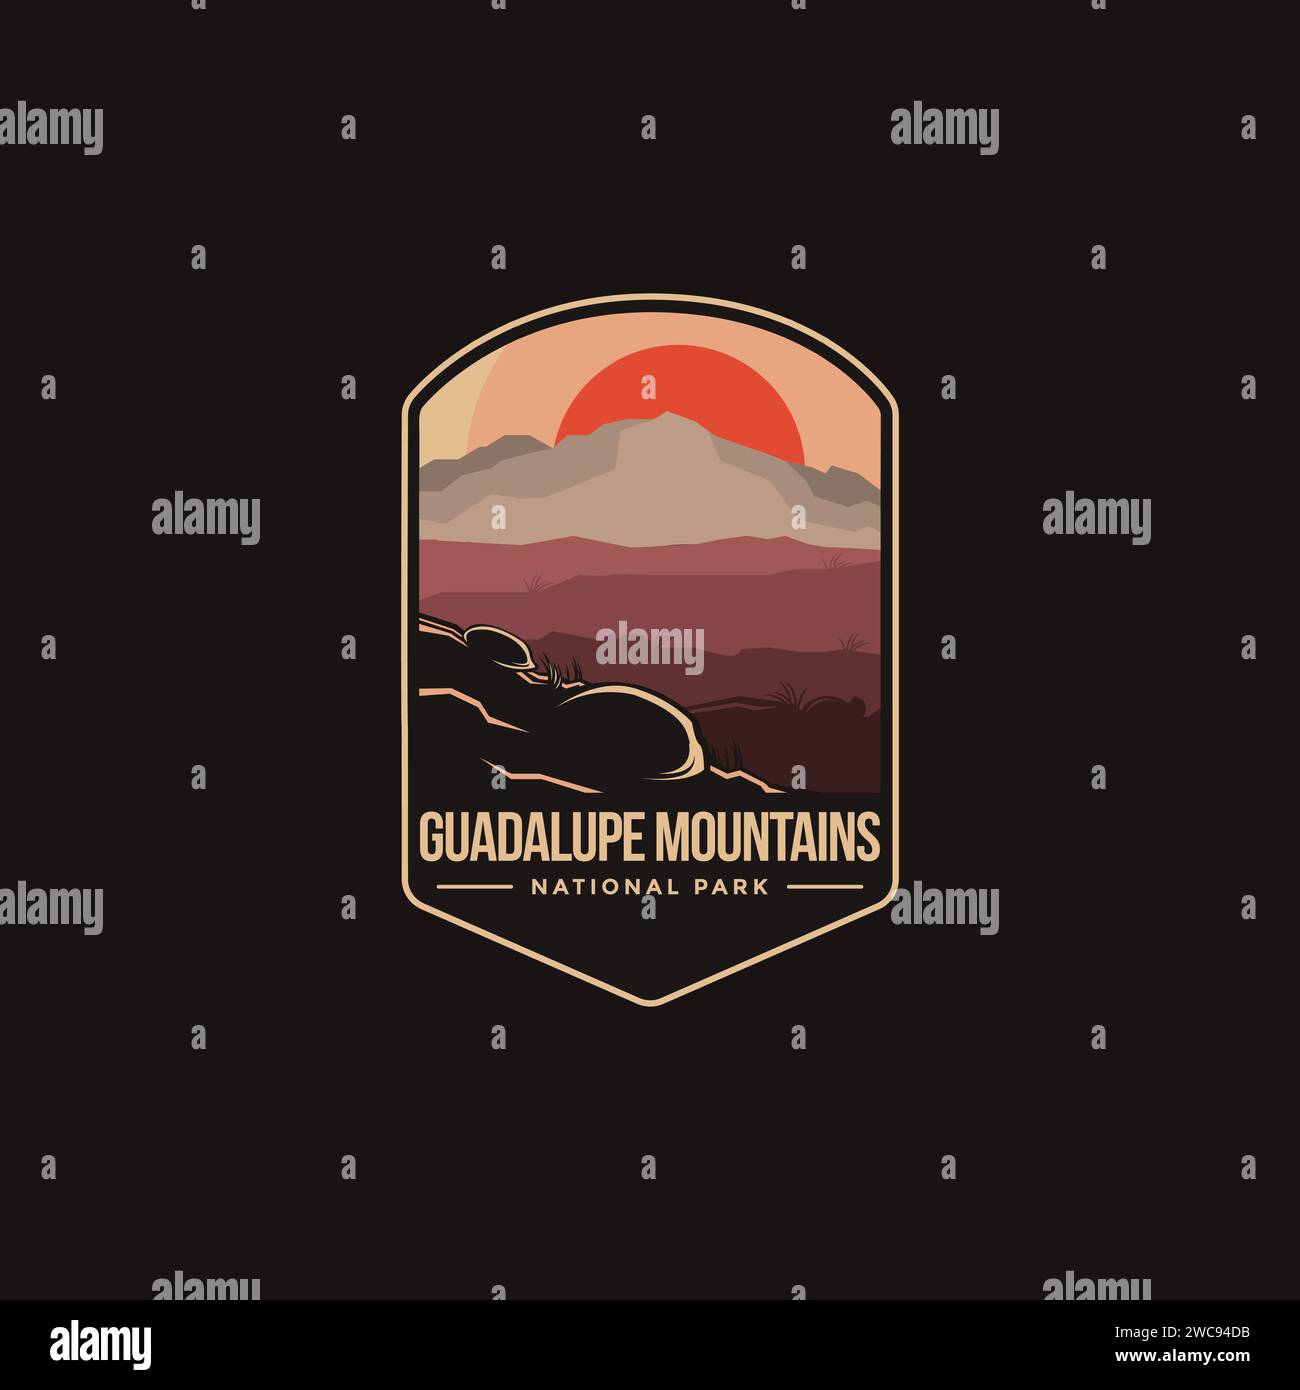 Emblème patch logo illustration du parc national des montagnes Guadalupe sur fond sombre Illustration de Vecteur